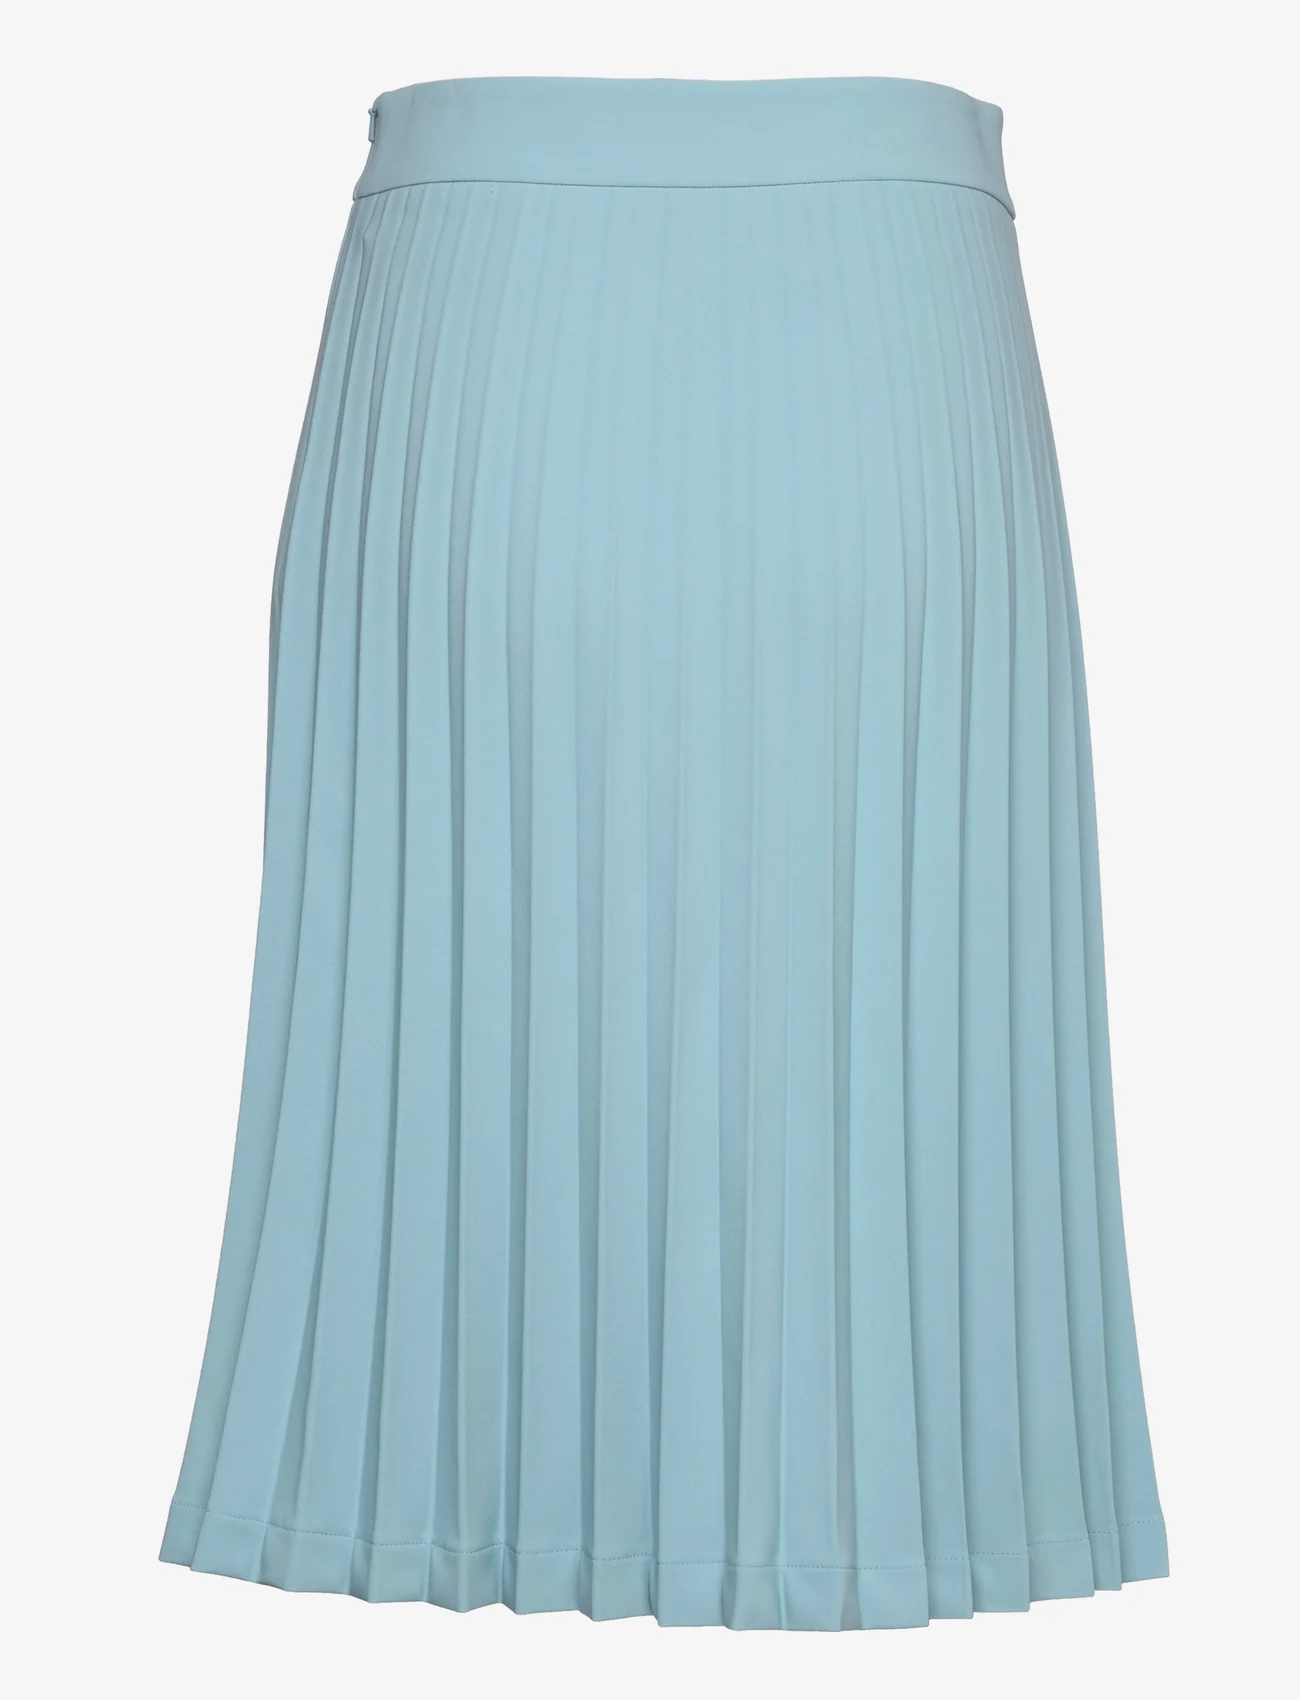 Boutique Moschino - Skirt - short skirts - light blue - 1